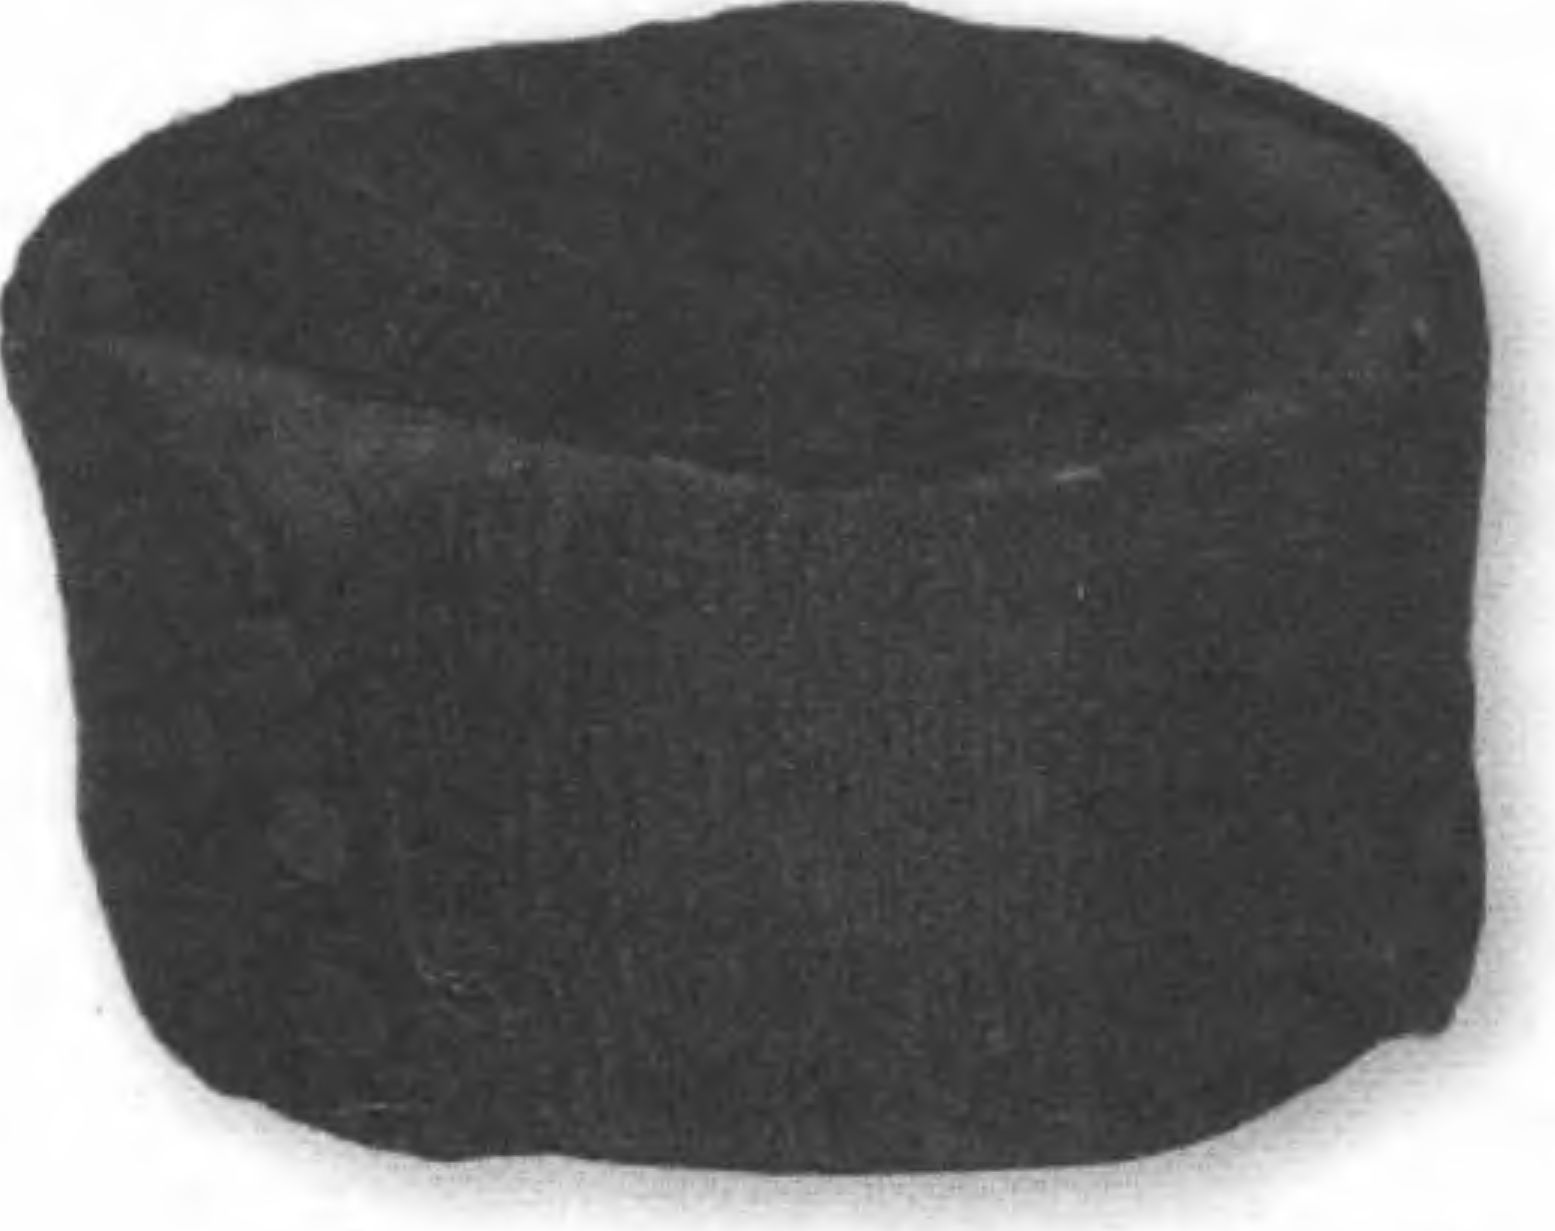 Элементы традиционной одежды крымских евреев XIX века: жилет и шапка-крымка